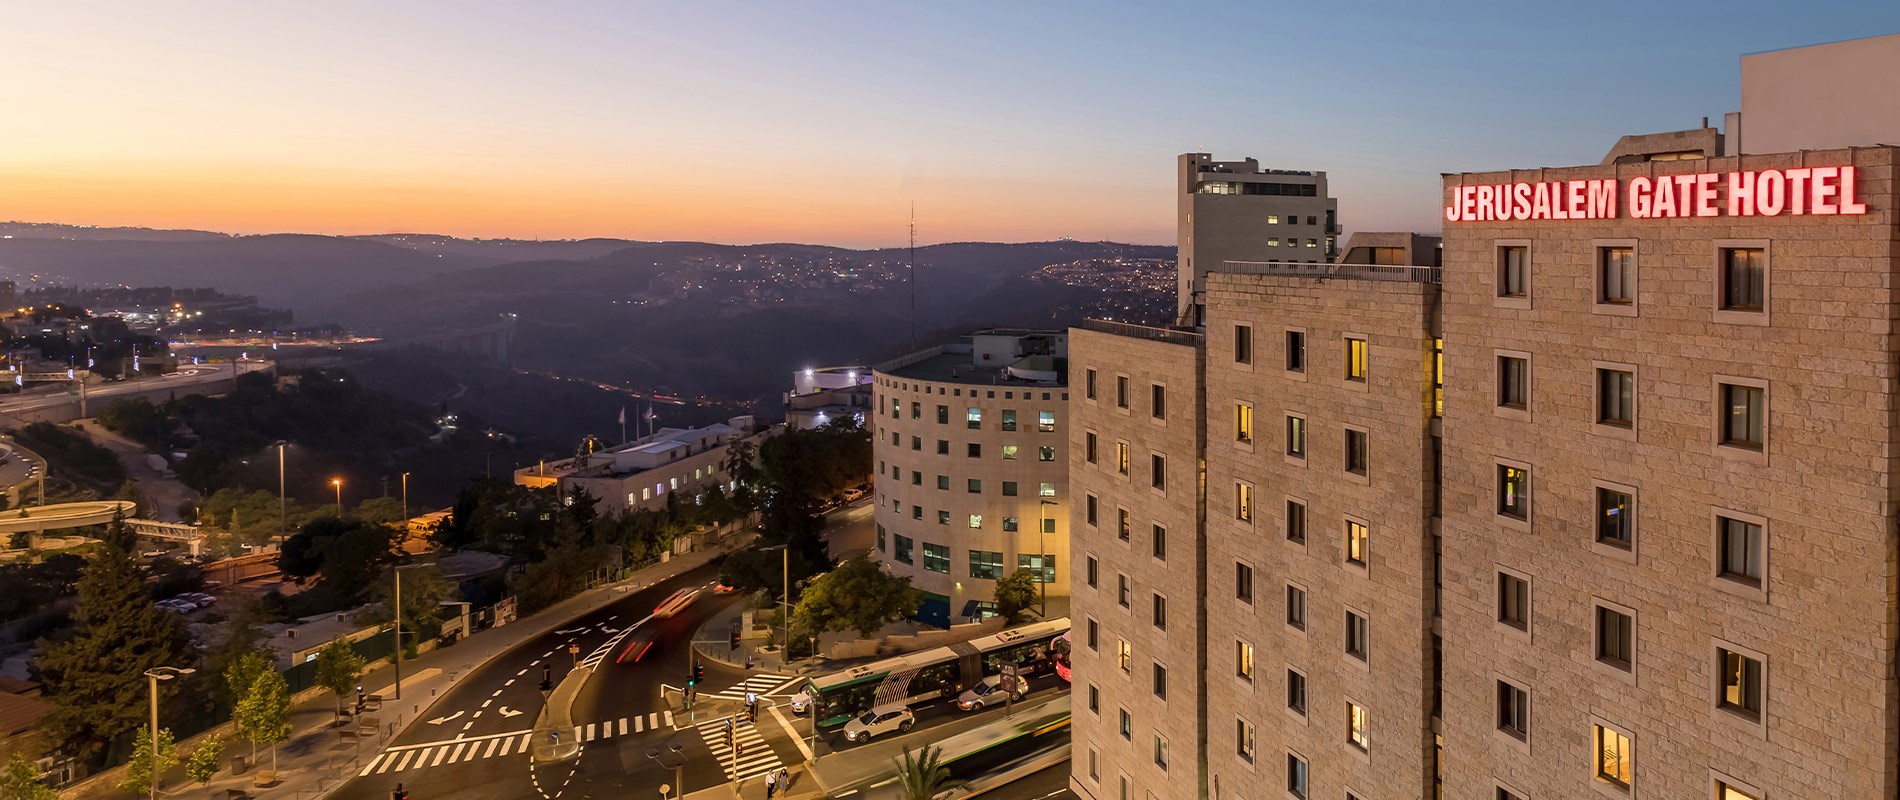 מלון שערי ירושלים - מלון כשר למהדרין בירושלים 